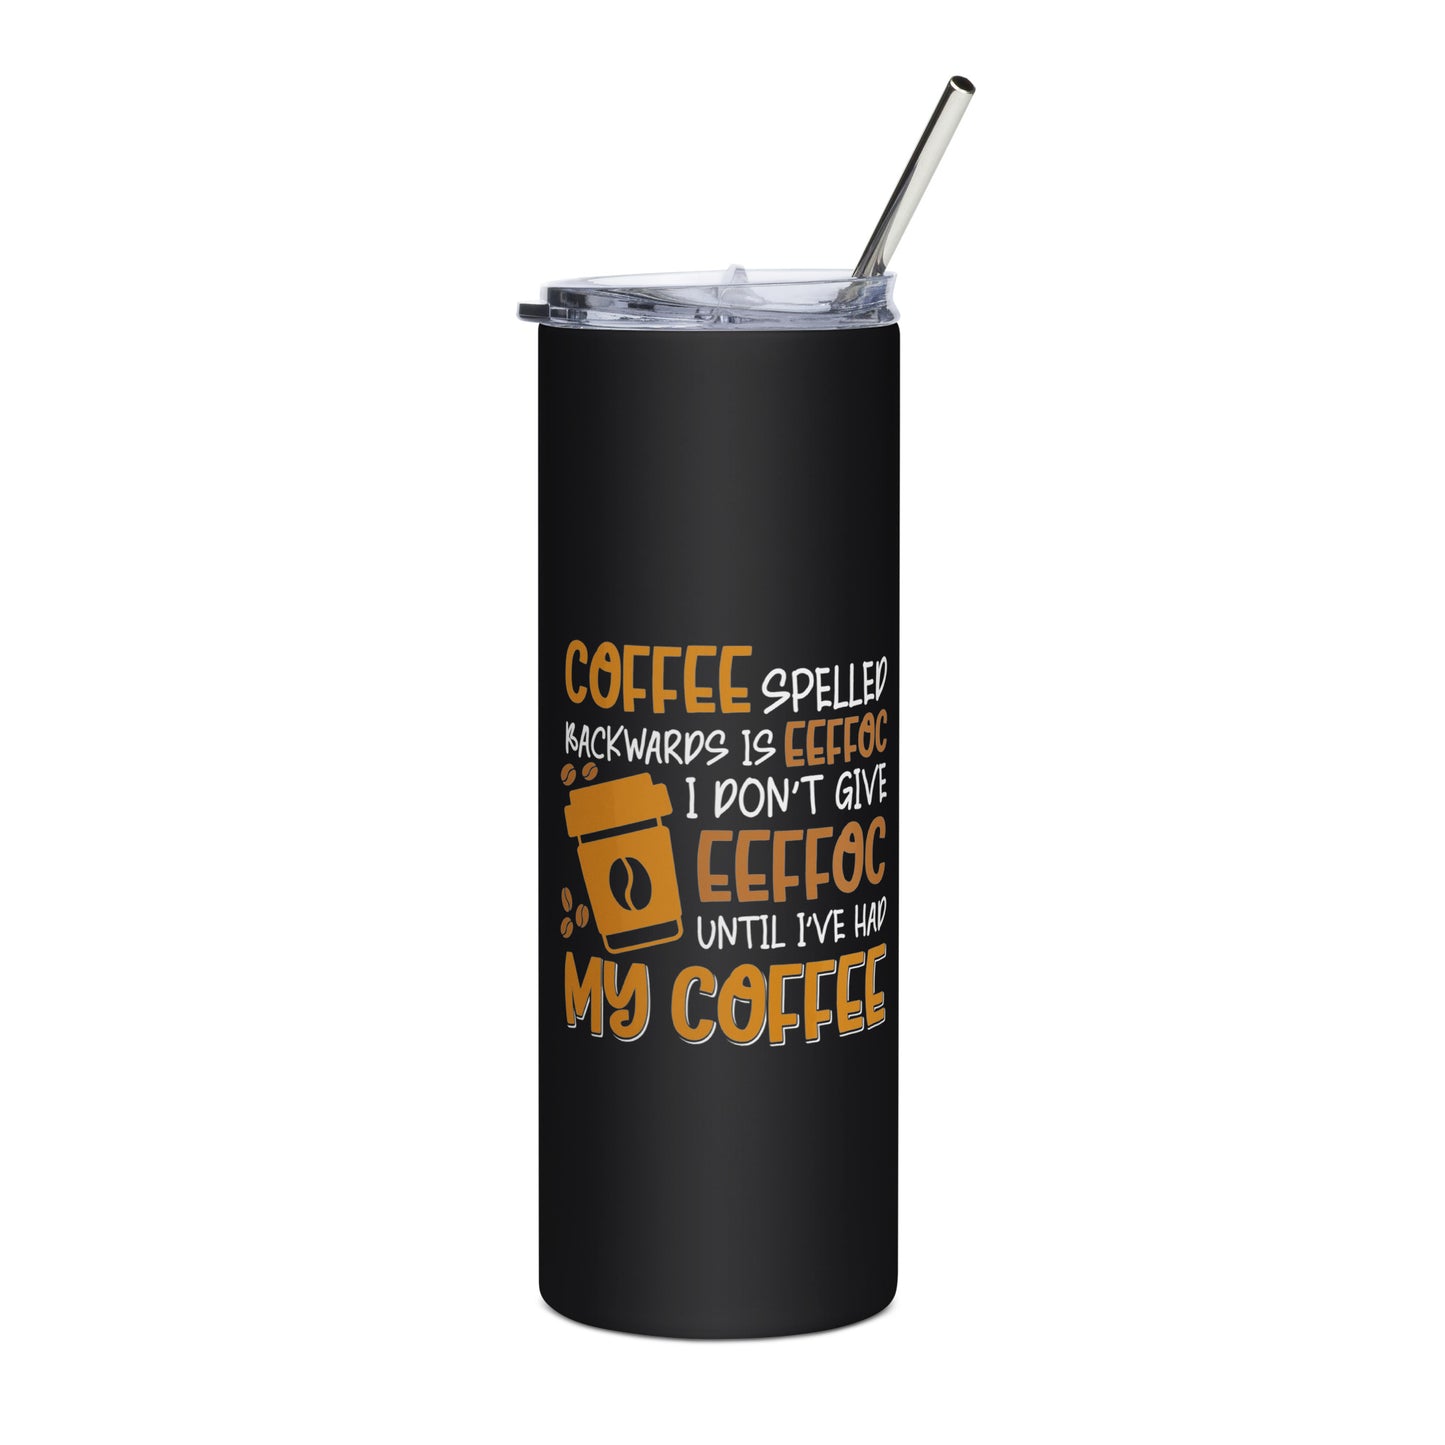 Coffee Spelled Backwards is Eeffoc Stainless steel tumbler